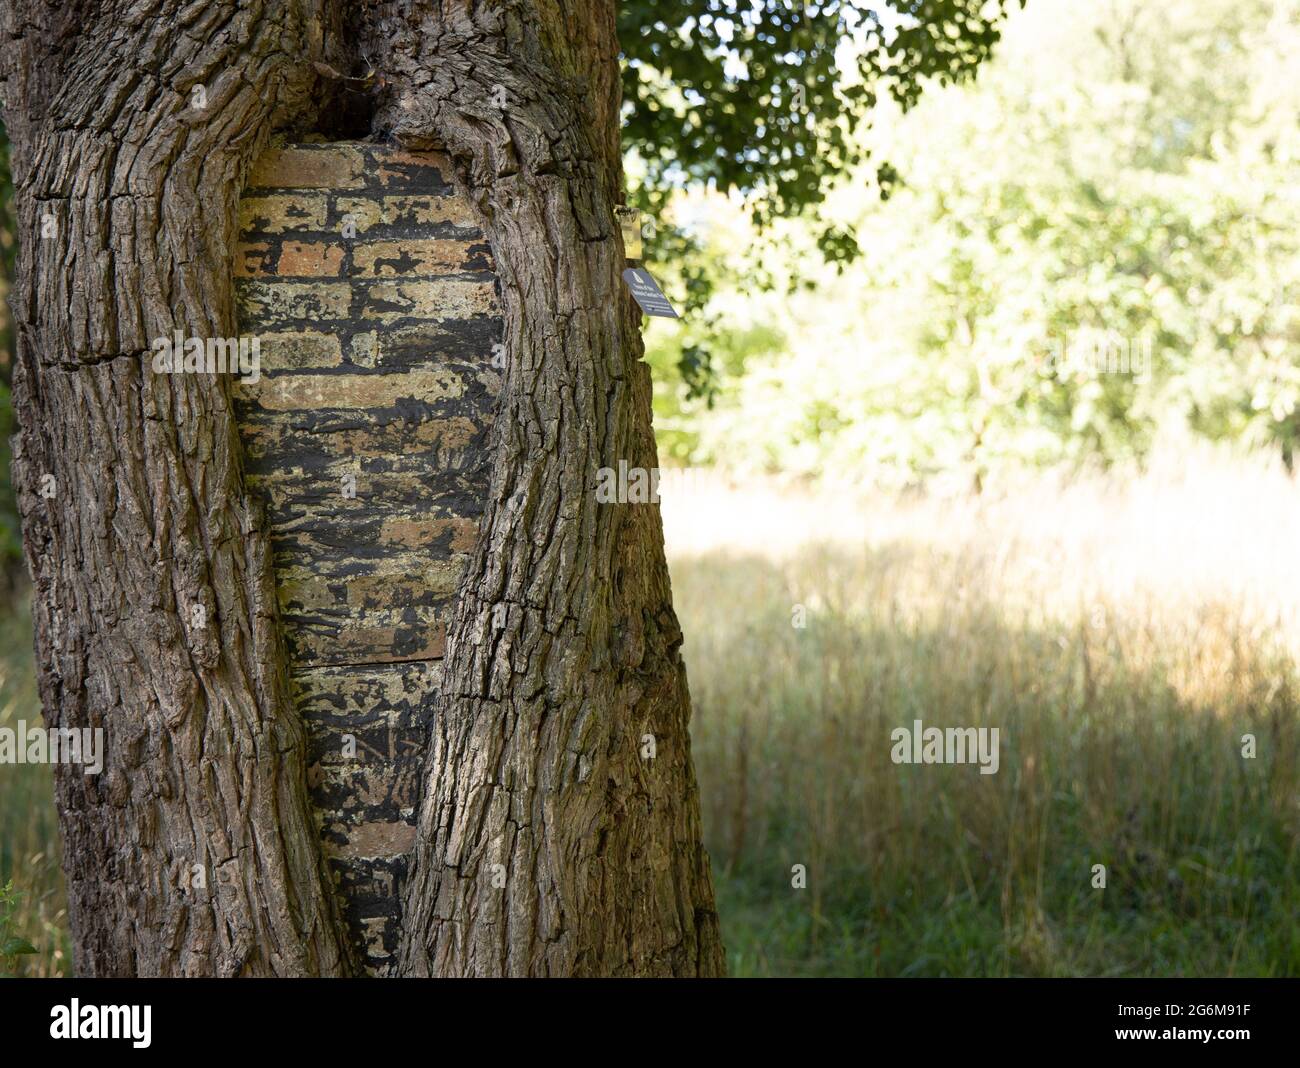 Seltsamer Baumstamm mit Ziegelsteinen im Botanischen Garten der Universität Cambridge, England Stockfoto